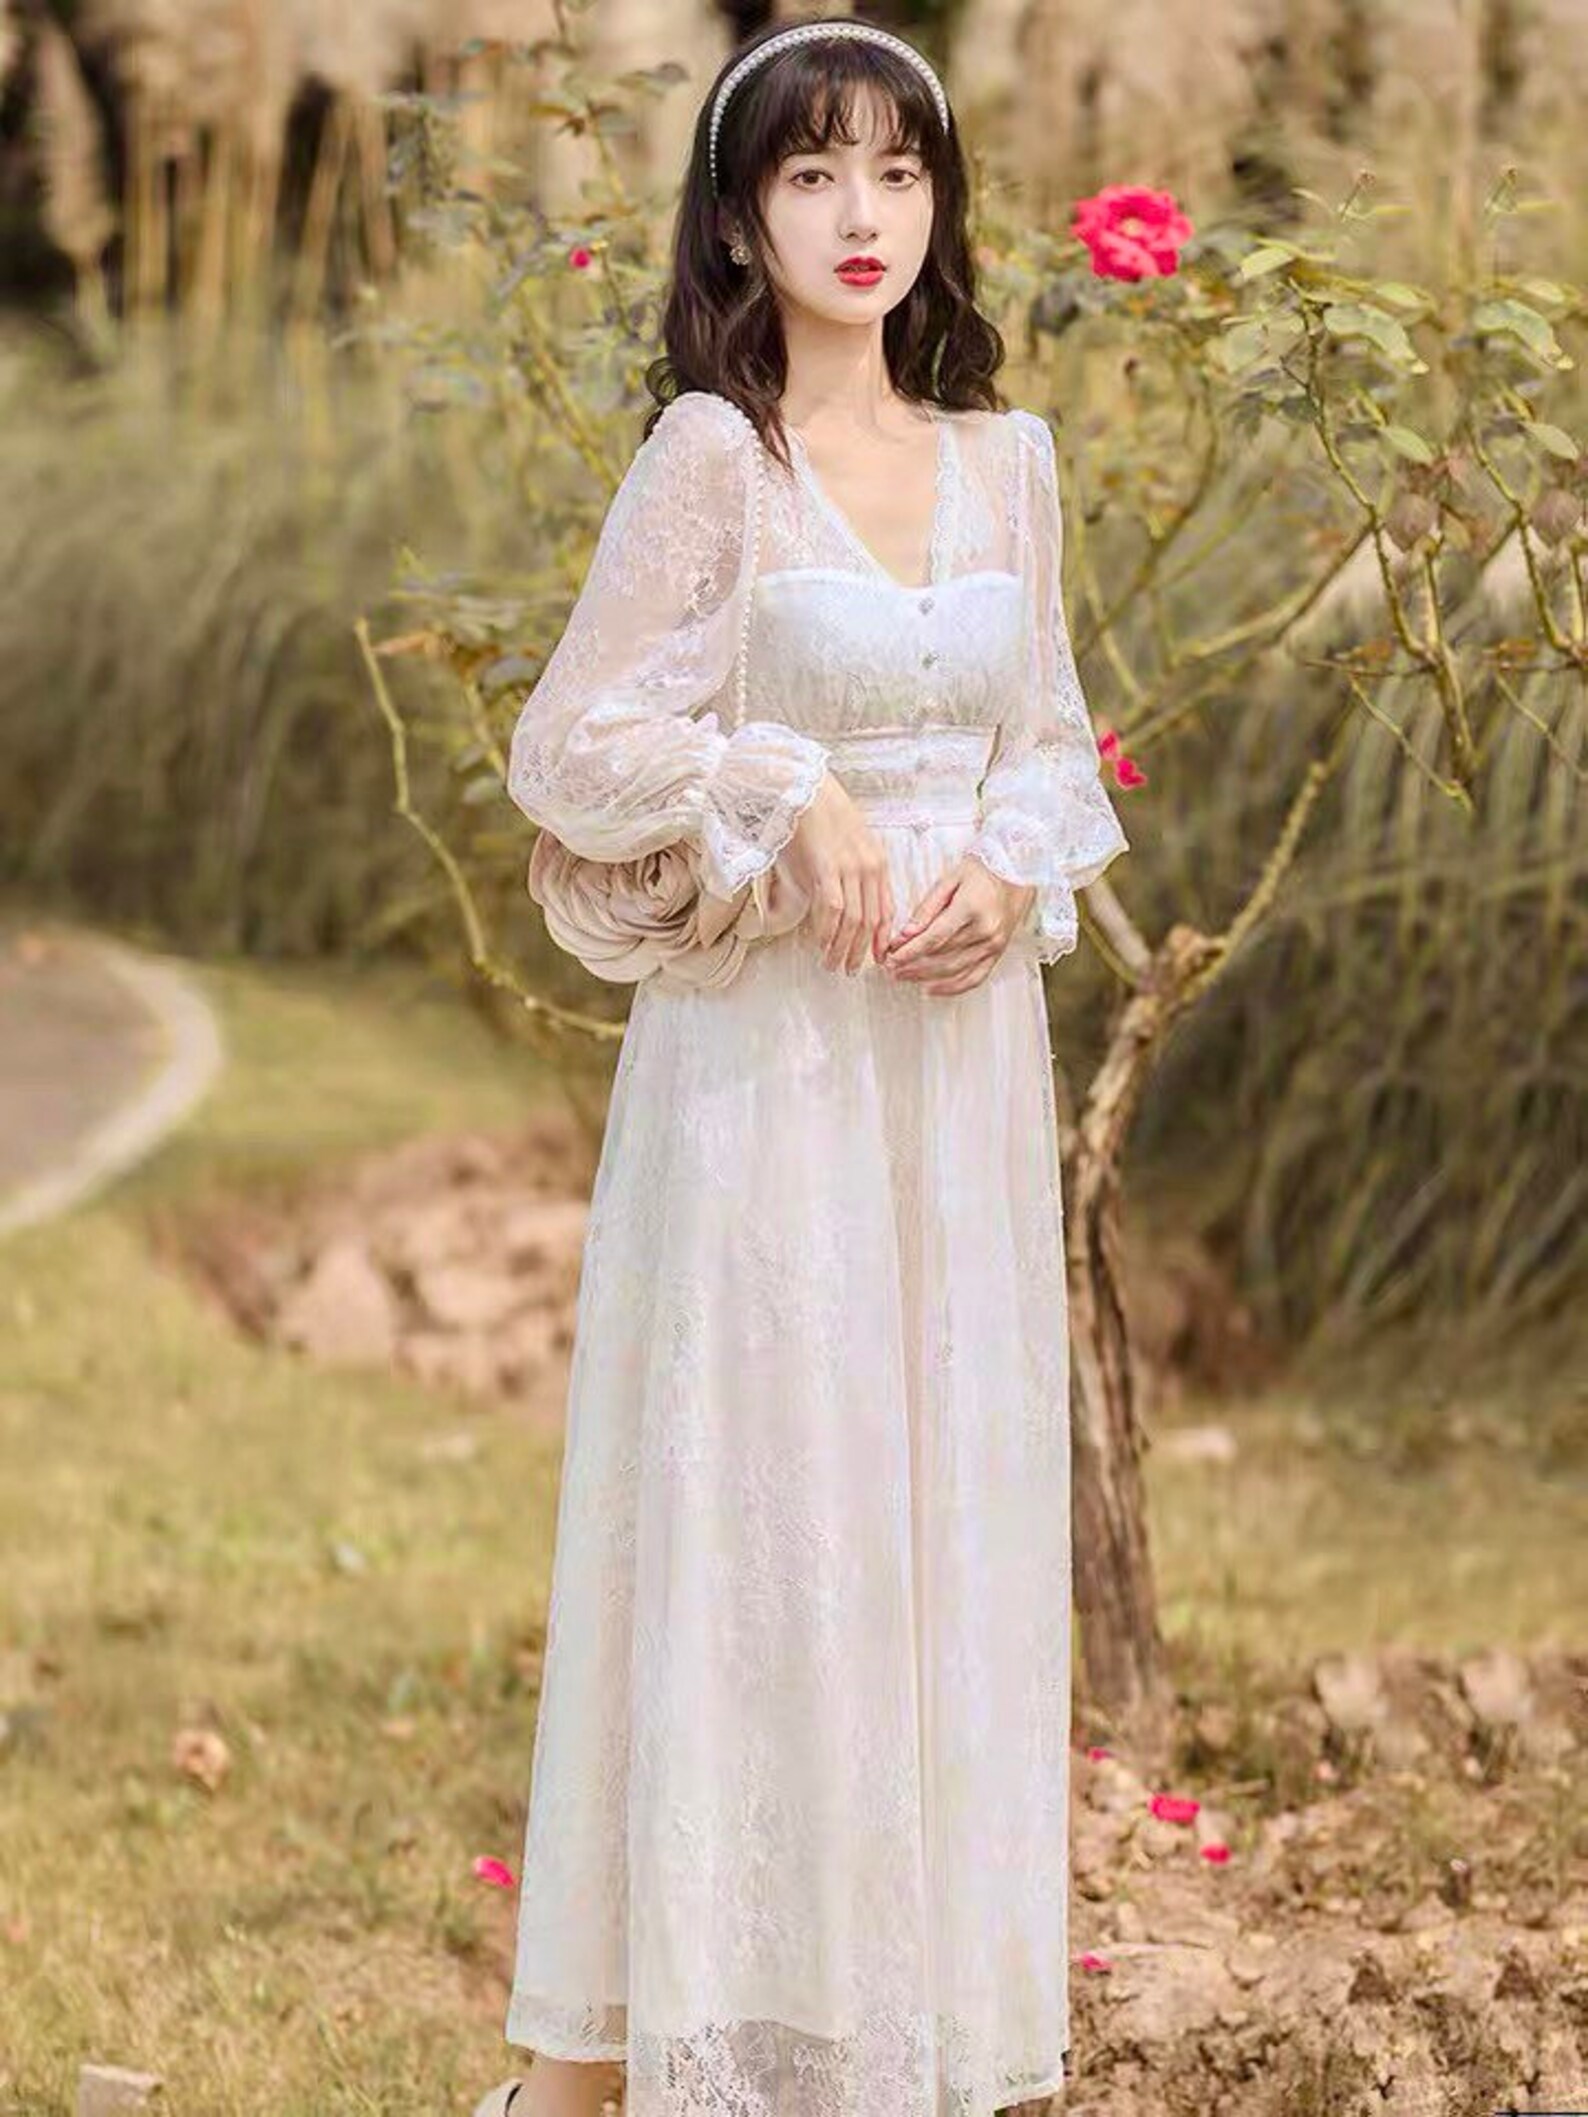 Primrose lace dress long aesthetic sheer white cottagecore | Etsy